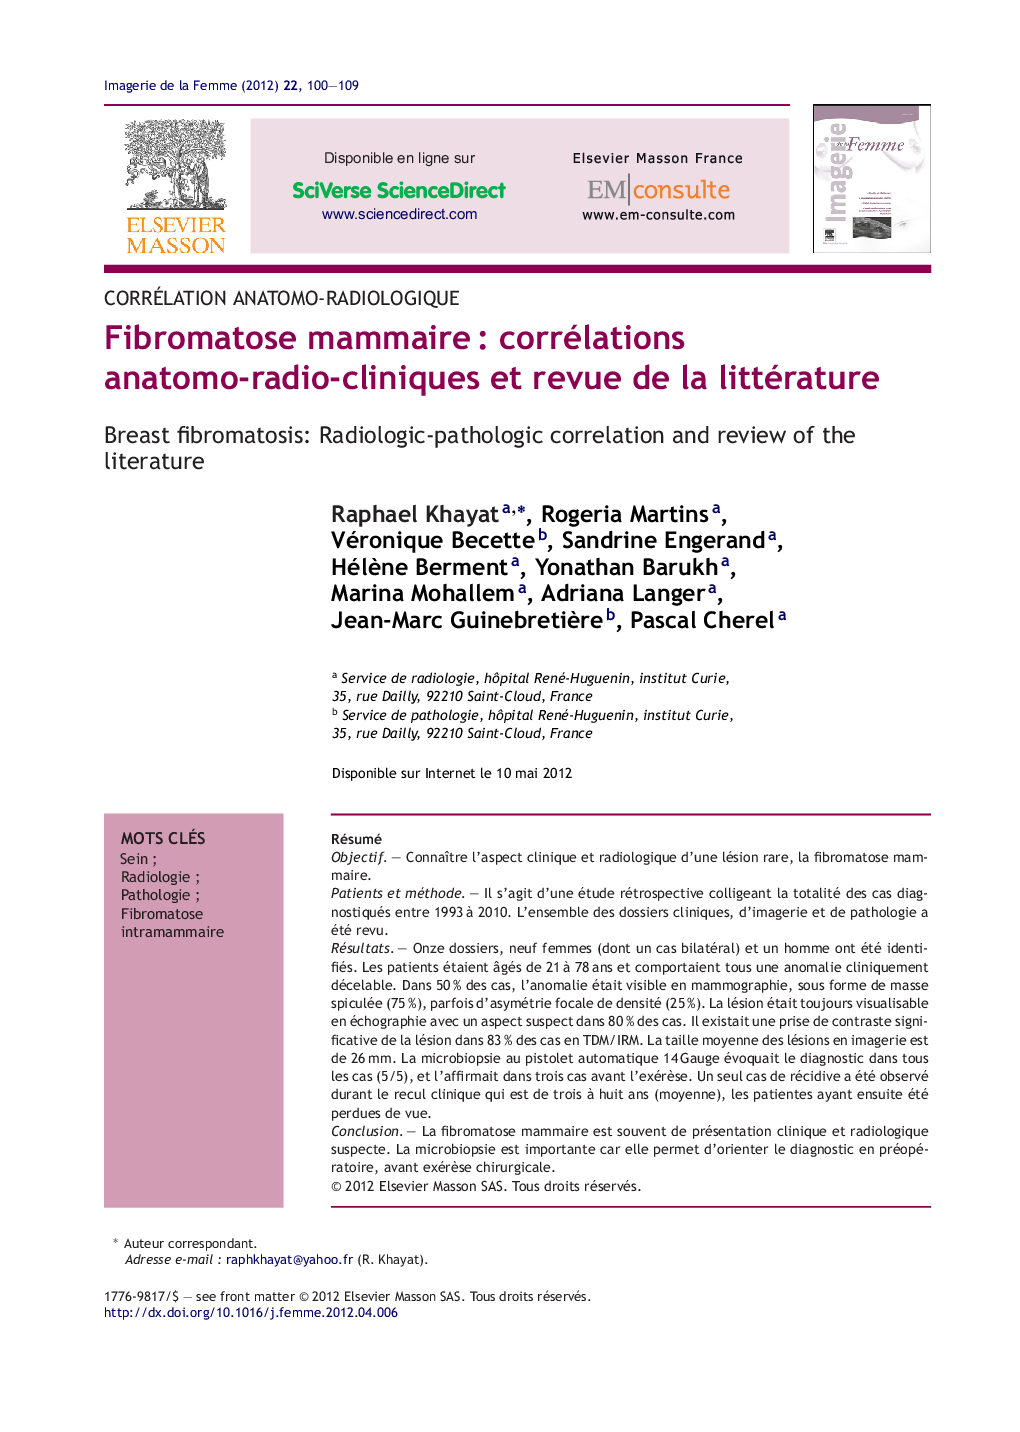 Fibromatose mammaireÂ : corrélations anatomo-radio-cliniques et revue de la littérature